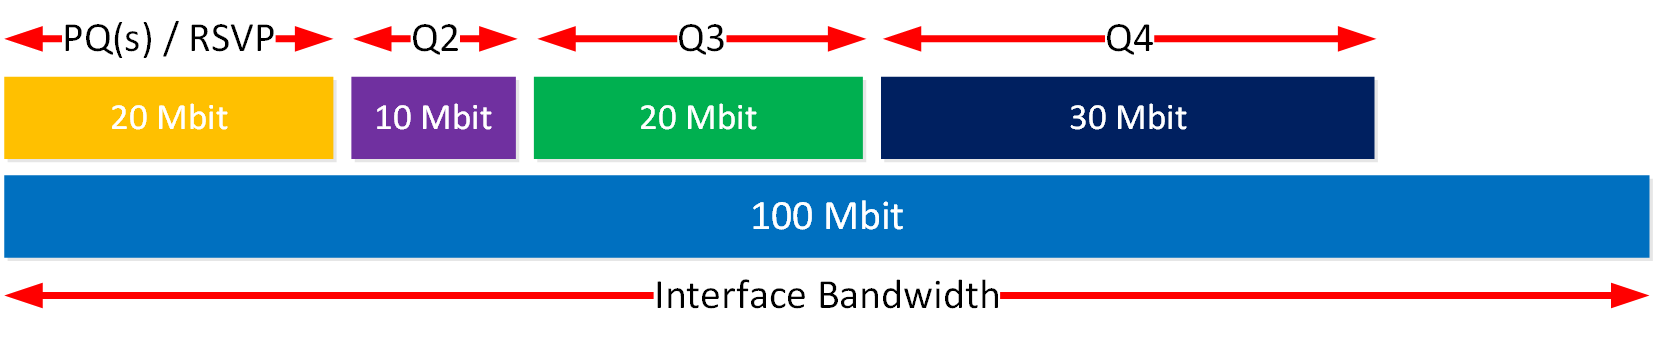 Cisco Qos Llq Bandwidth Percent